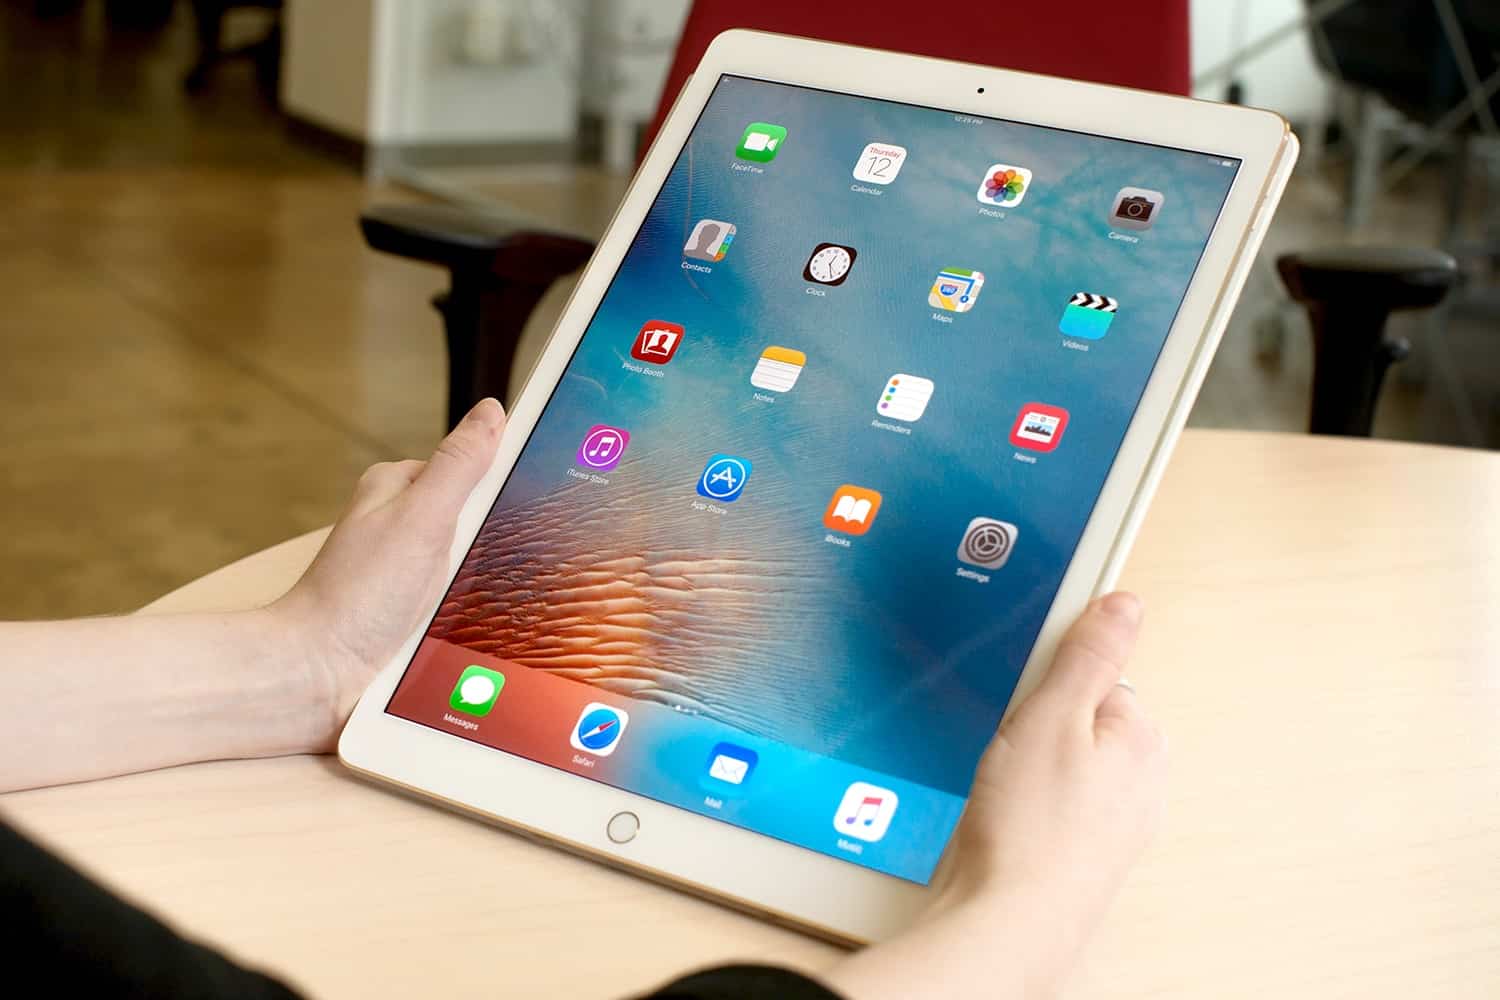 Rumores apuntan a que se lanzará un nuevo iPad de 10.5 pulgadas